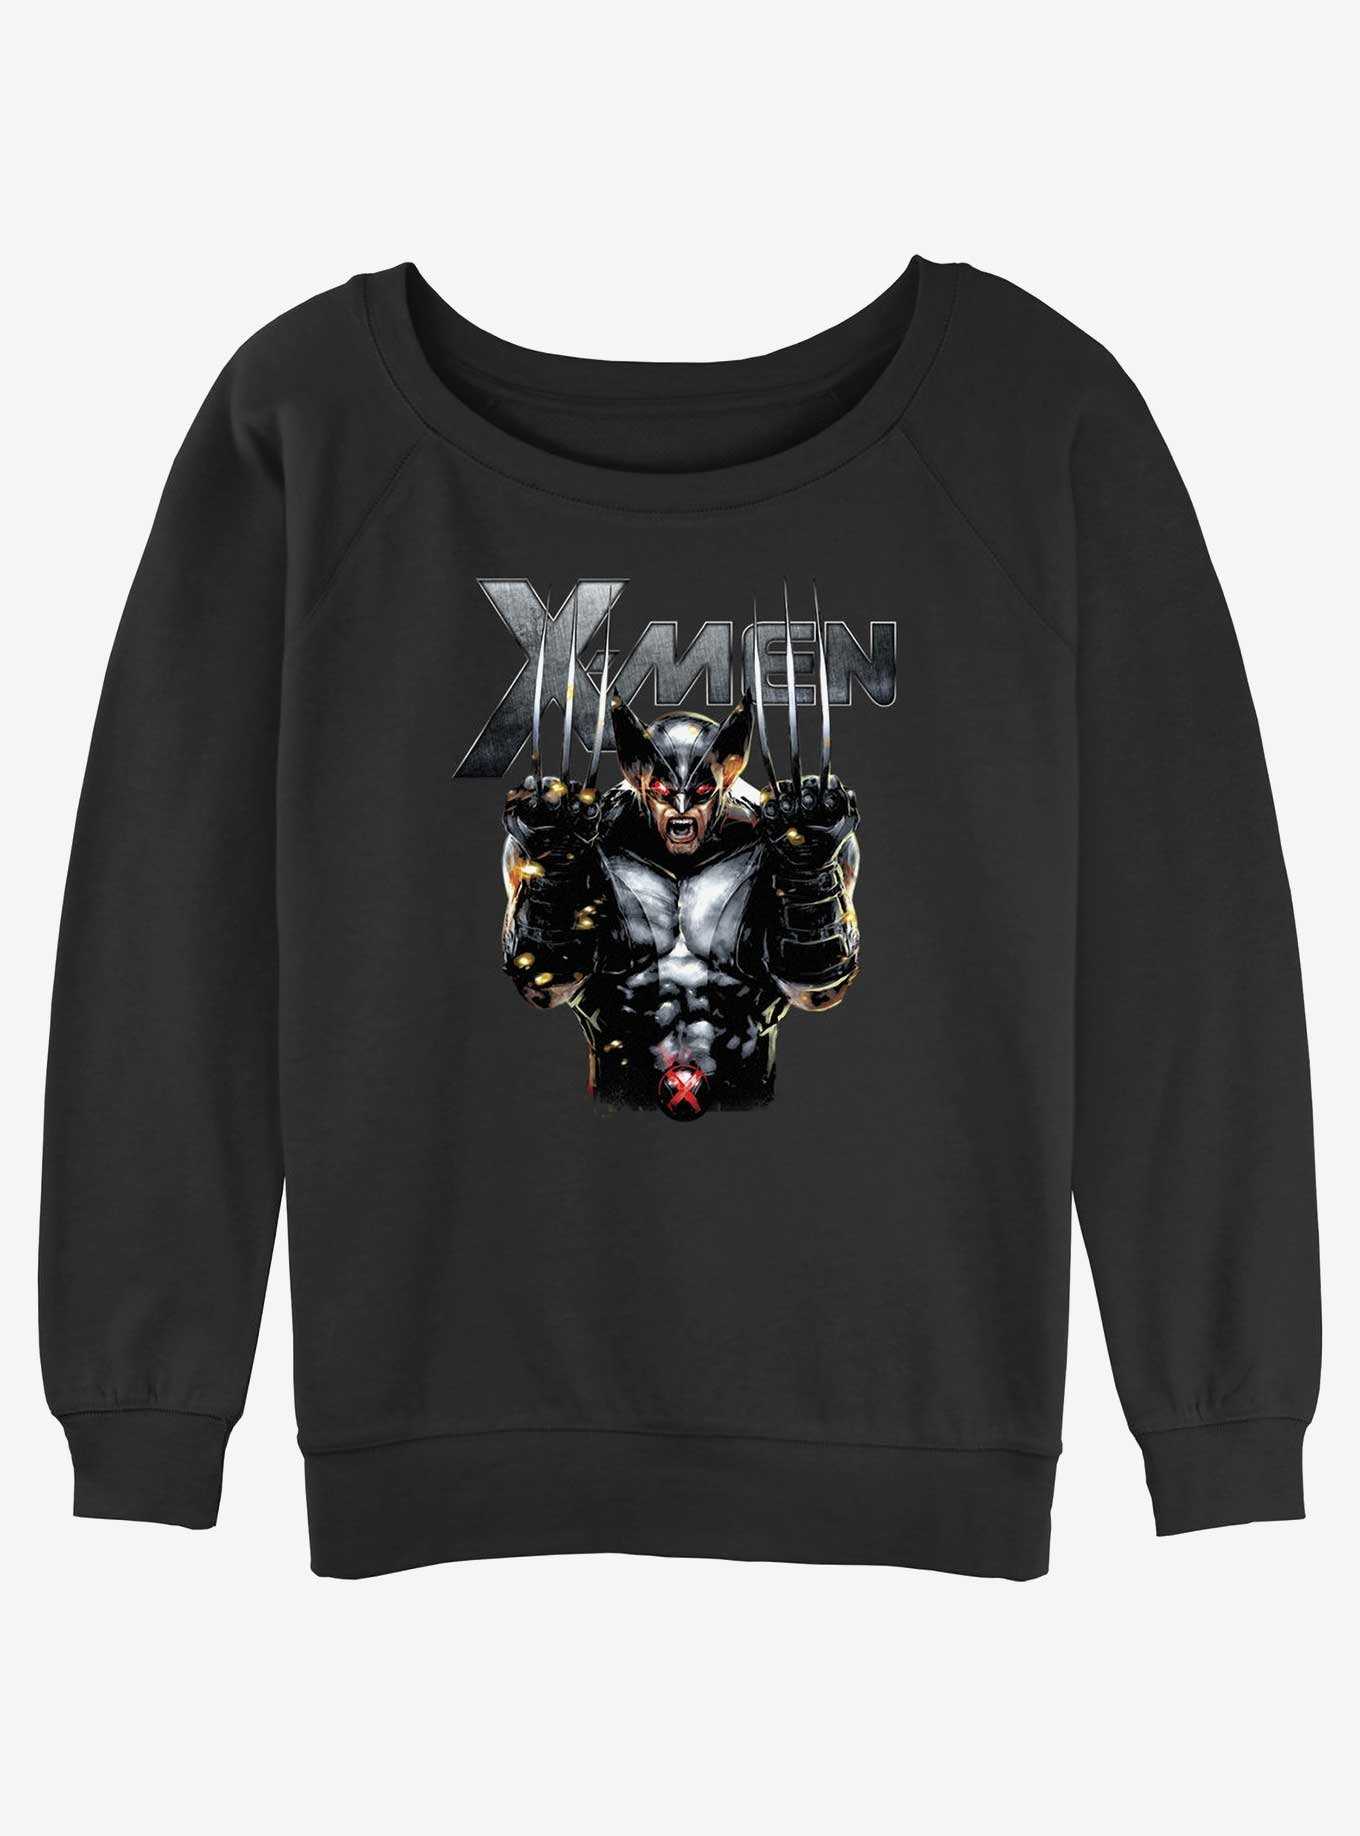 Wolverine Adamantium Rage Girls Slouchy Sweatshirt, , hi-res